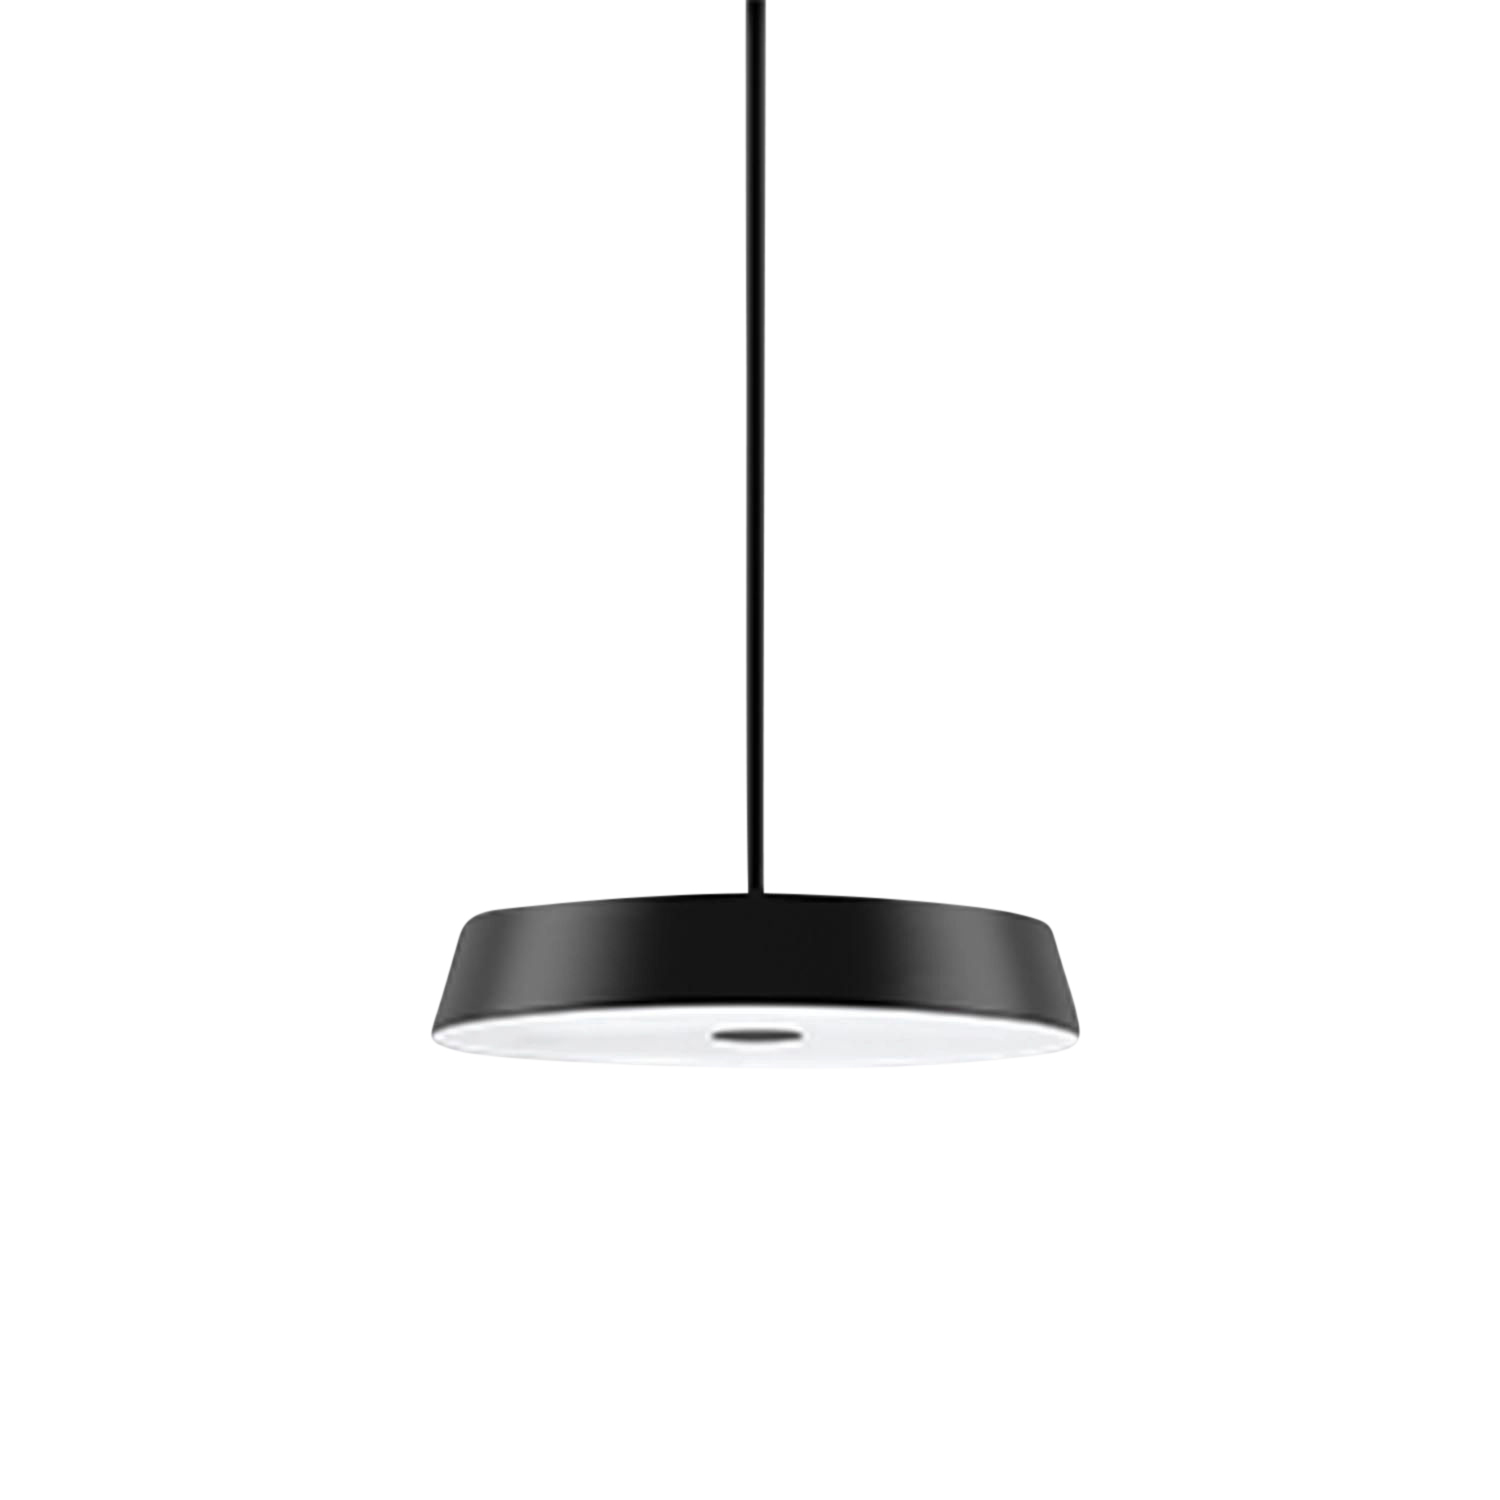 Koi Neo LED Pendelleuchte, Farbe schwarz, Lichtfarbe 4000 k - kühles, nüchternes arbeitslicht, Betriebsart on/off, bauseits, Länge 1 m von Belux